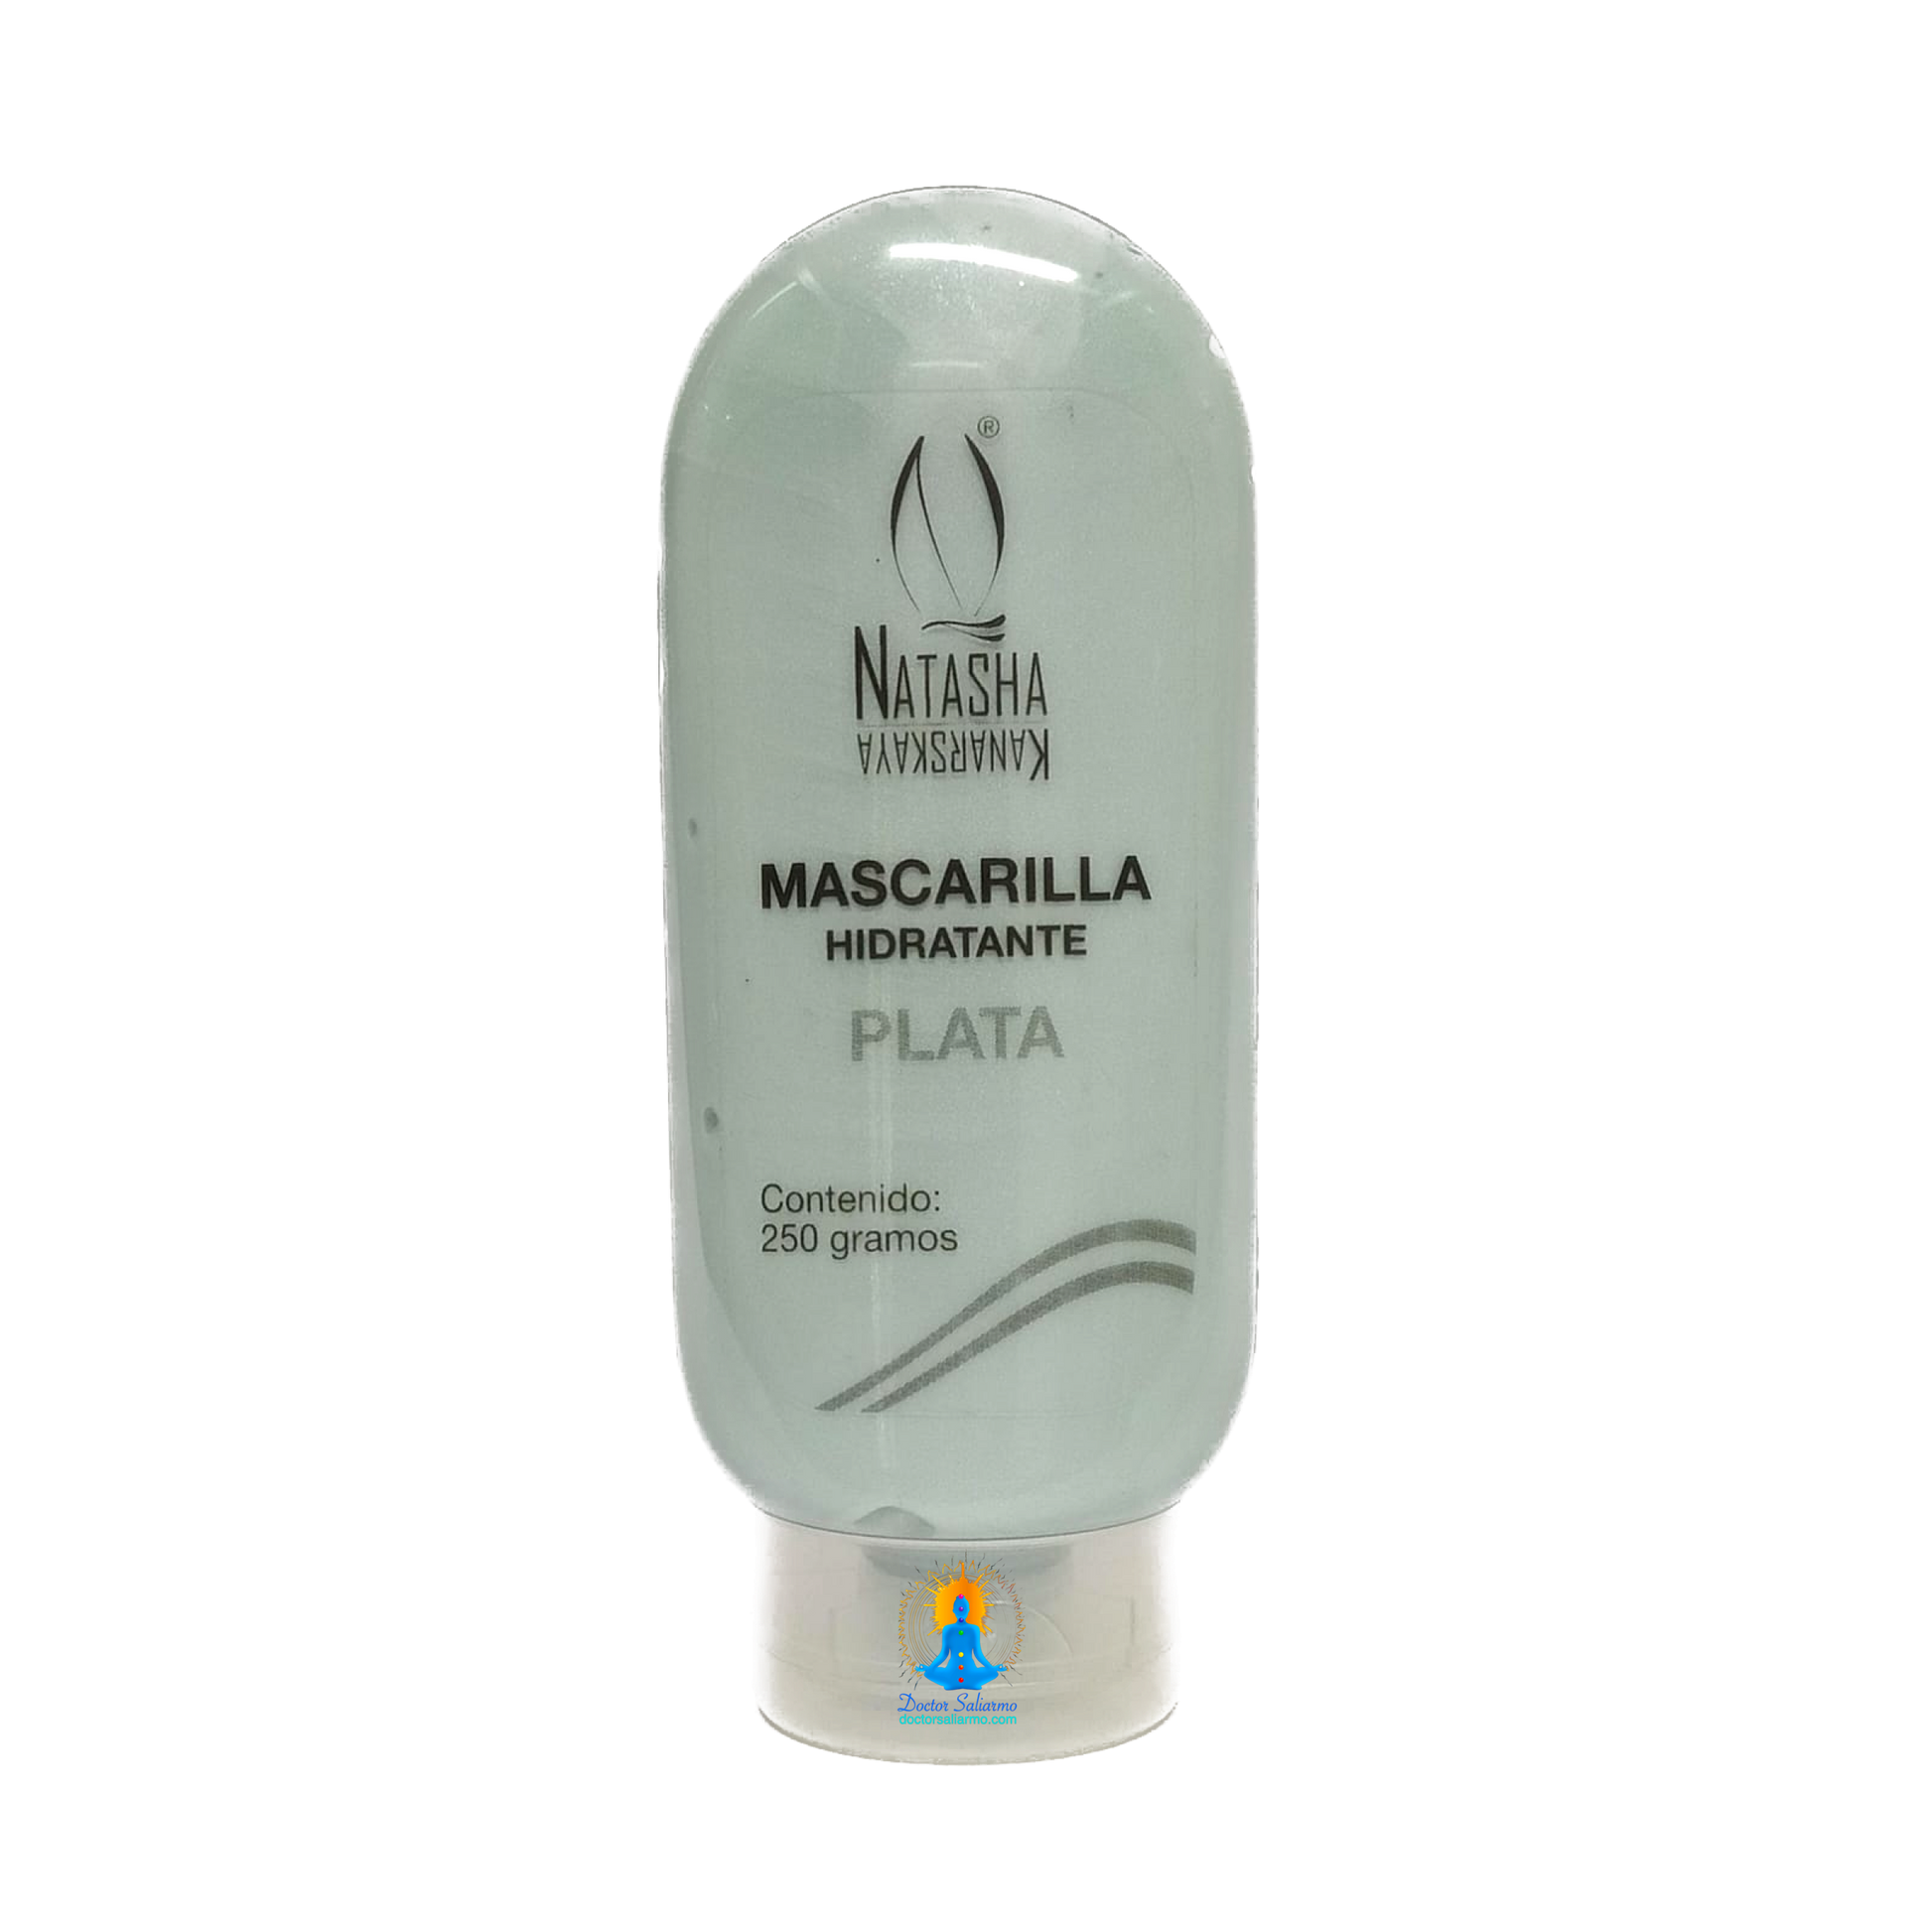 Mascarilla hidratante plata es antioxidante celular, antienvejecimiento cutaneo, reafirma musculos faciales, disminuye líneas expresion